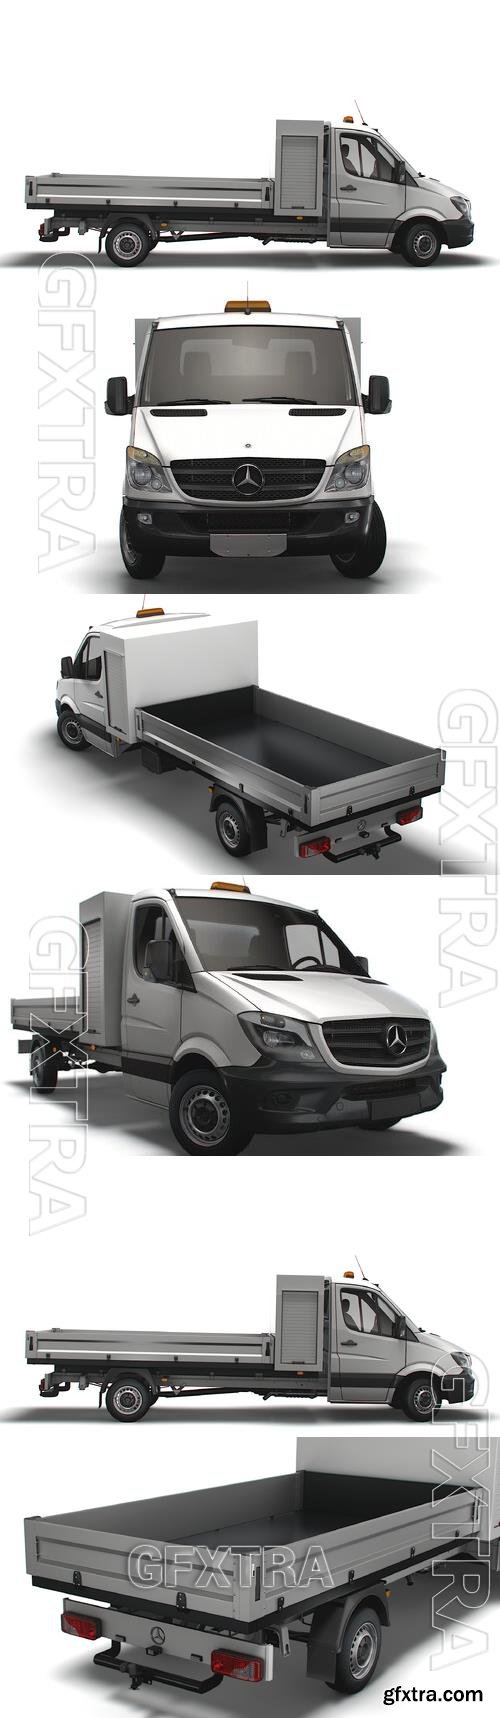 Mercedes Benz Sprinter Single Cab Tipper Toolpod 2018 Model